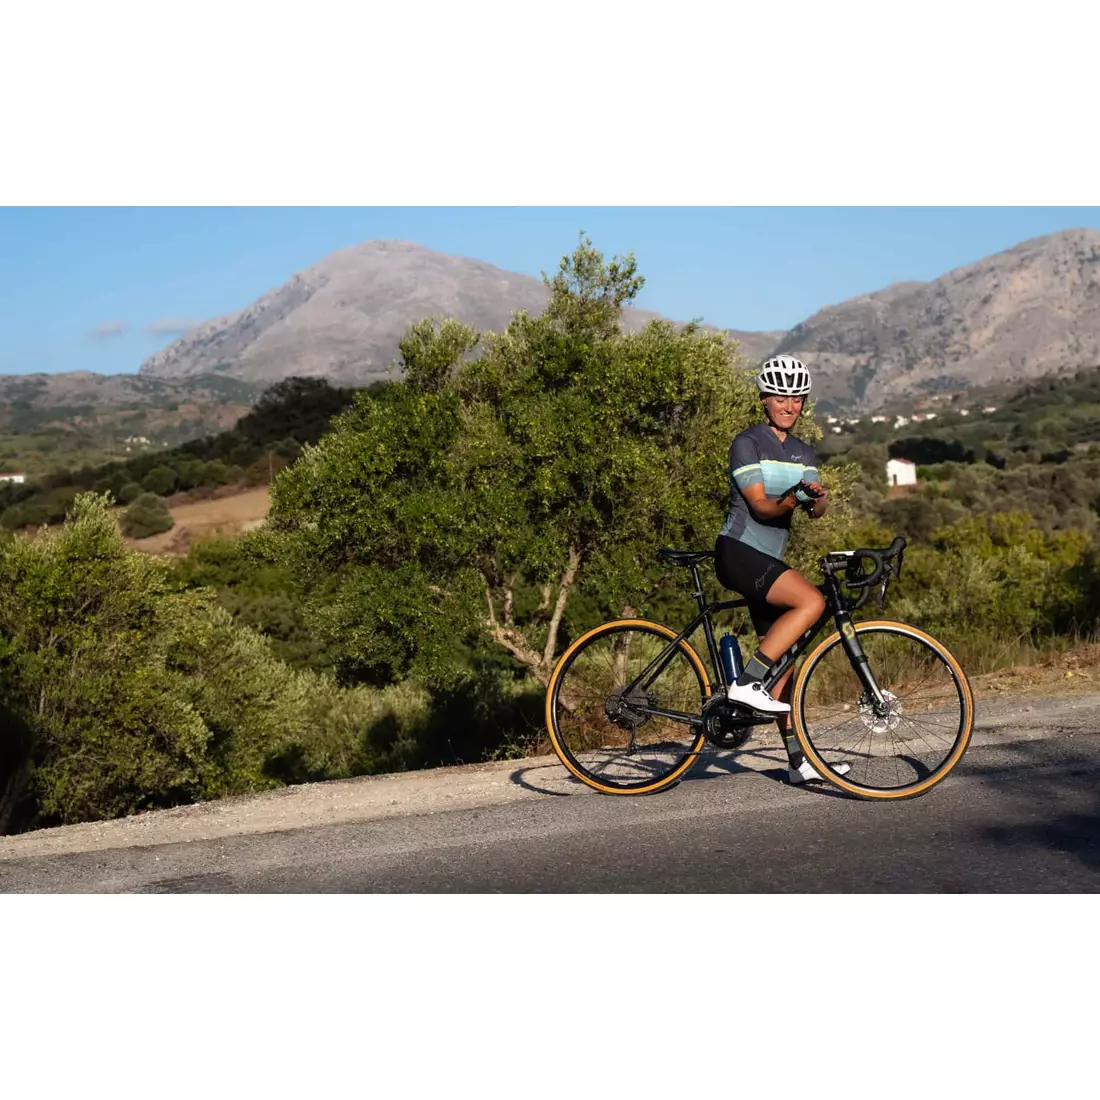 Rogelli IMPRESS II tricou de ciclism pentru femei, turcoaz-galben-gri